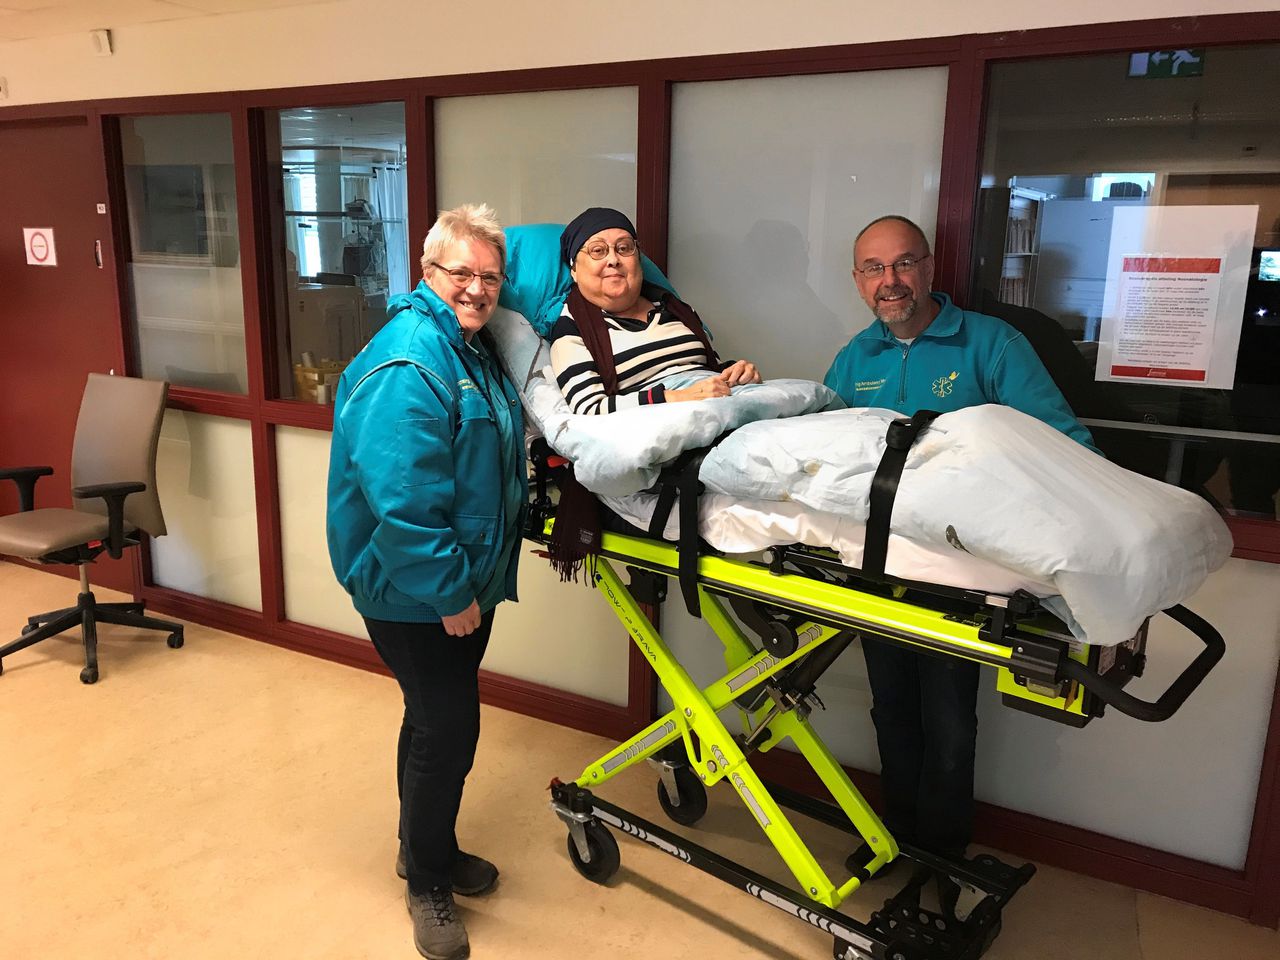 Margot Lee in het ziekenhuis voor een bezoek aan haar pasgeboren kleinkind, met twee medewerkers van stichting Ambulance Wens.